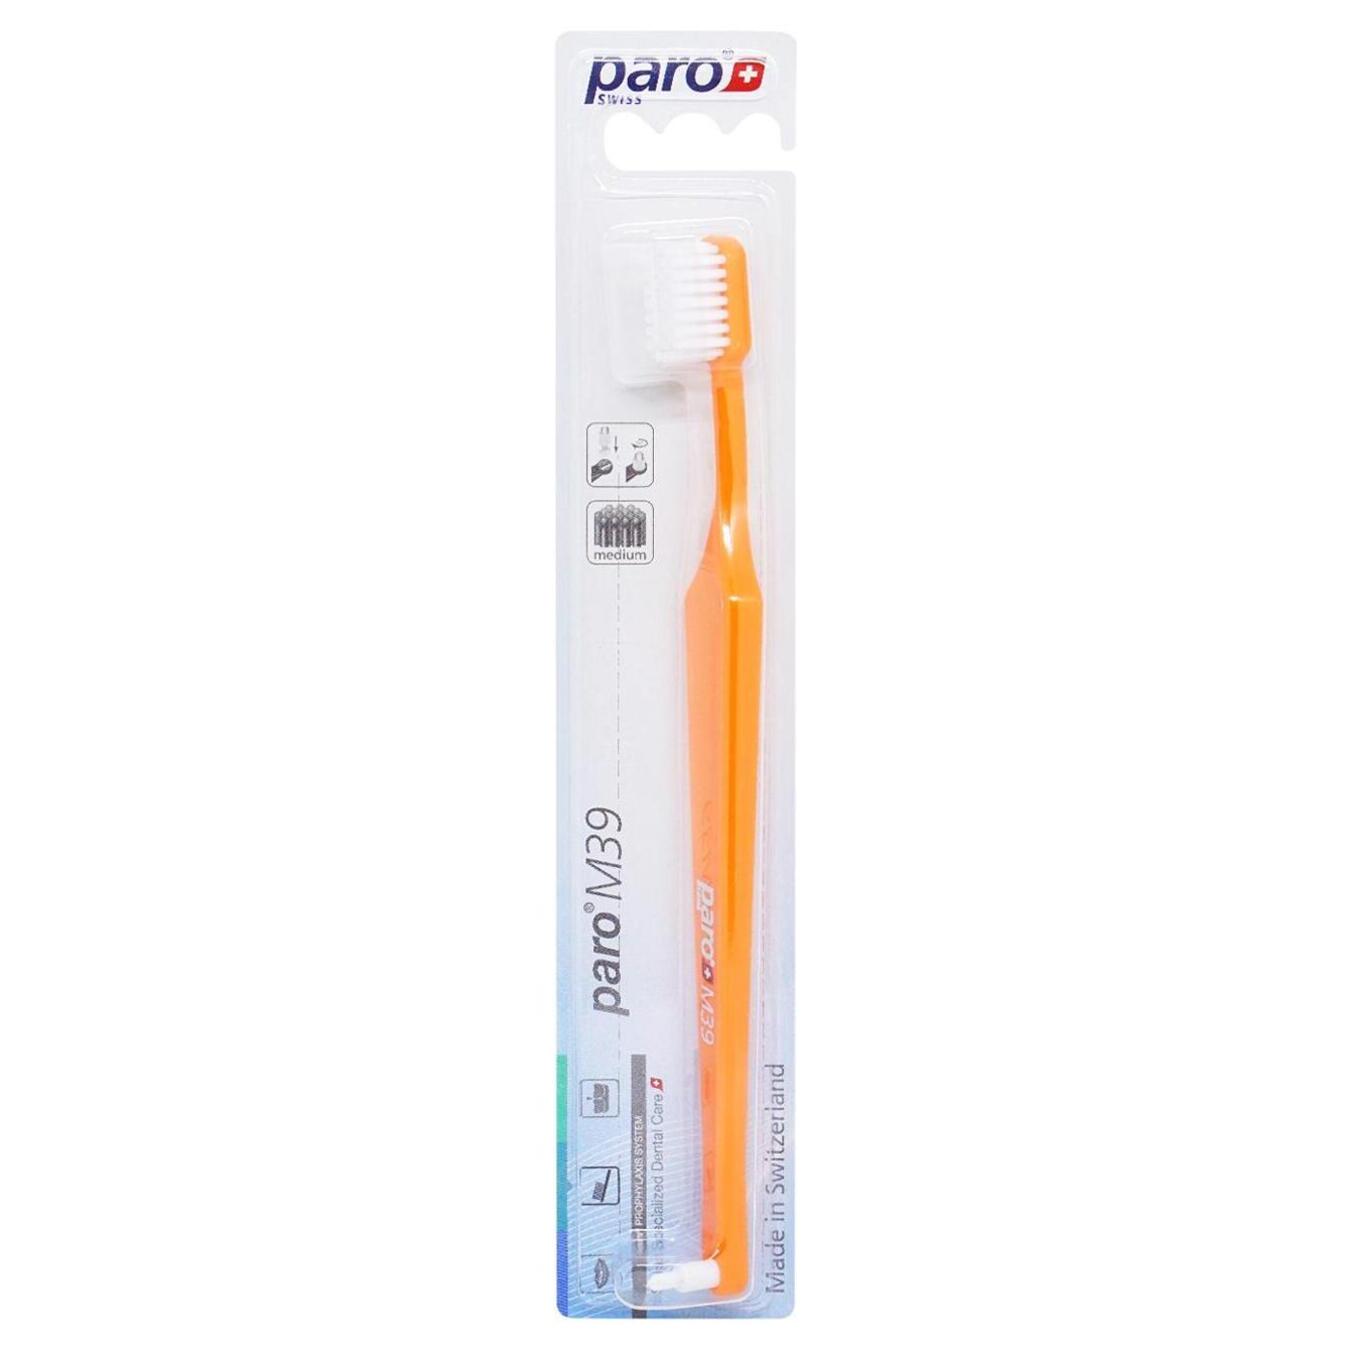 Toothbrush Paro medium hardness orange